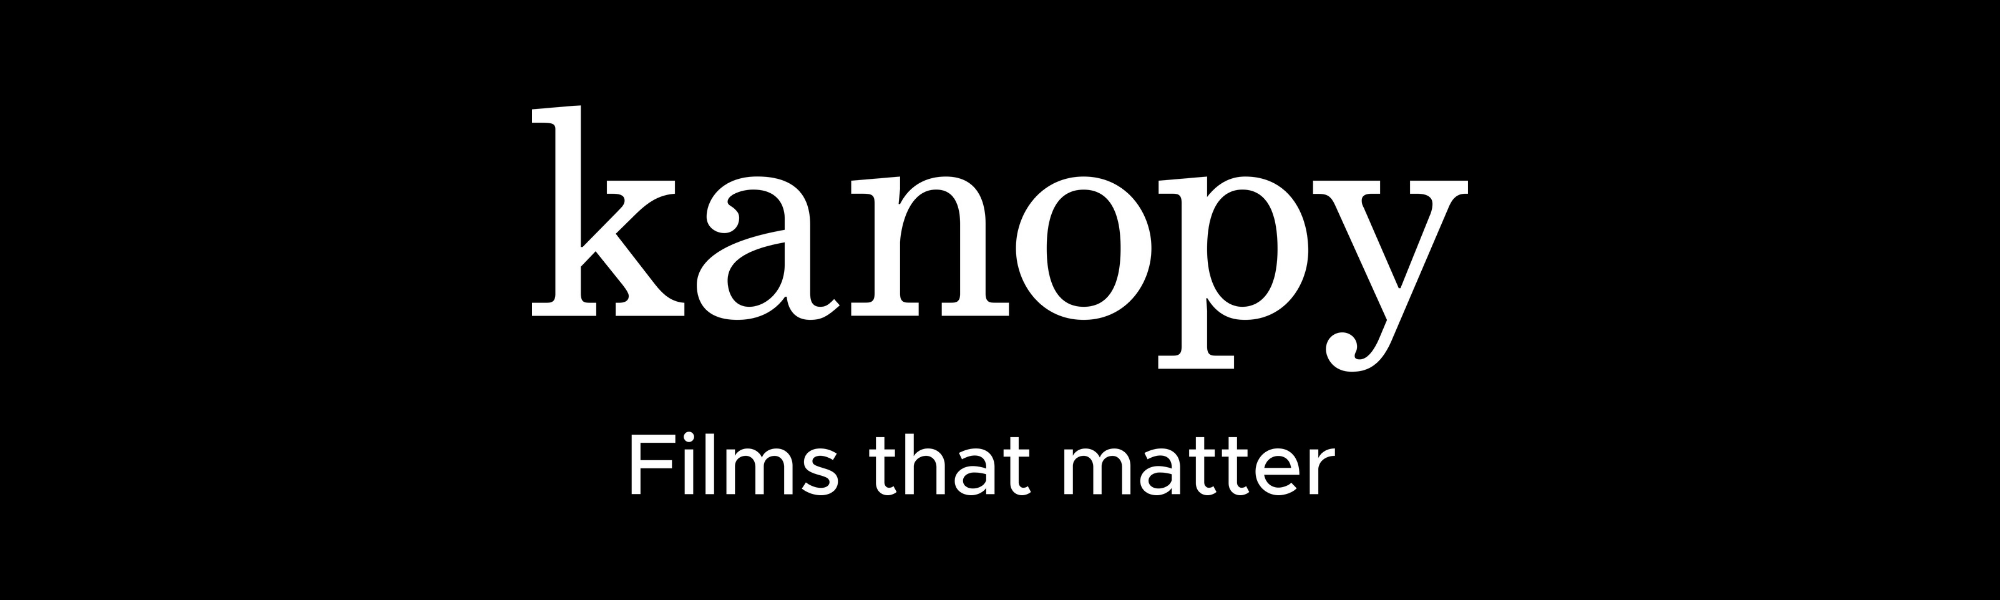 kanopy films that matter